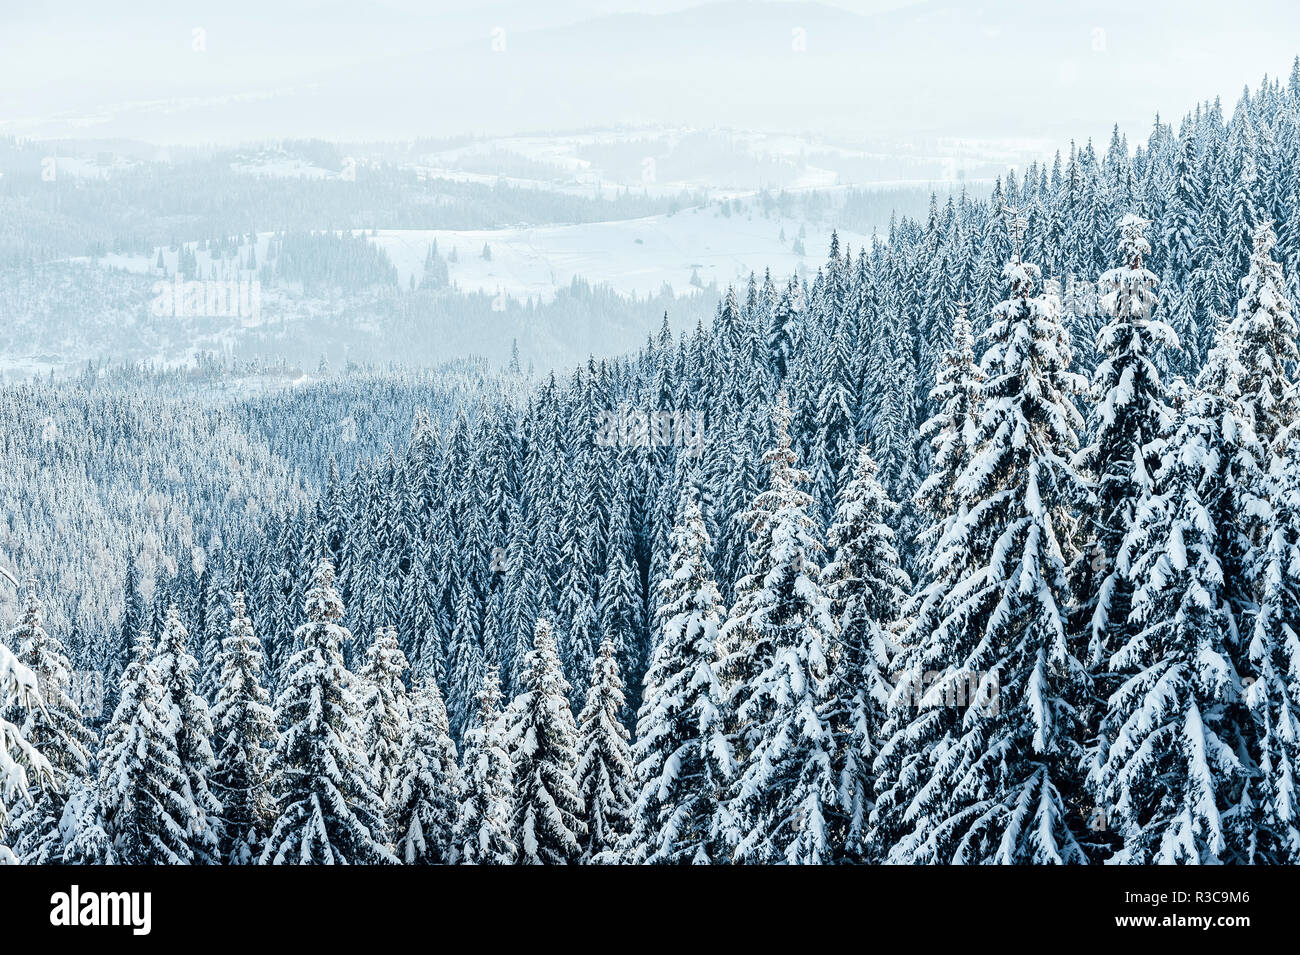 Fond de Noël avec les sapins enneigés et les fortes chutes de neige. Montagnes hiver paysage Banque D'Images